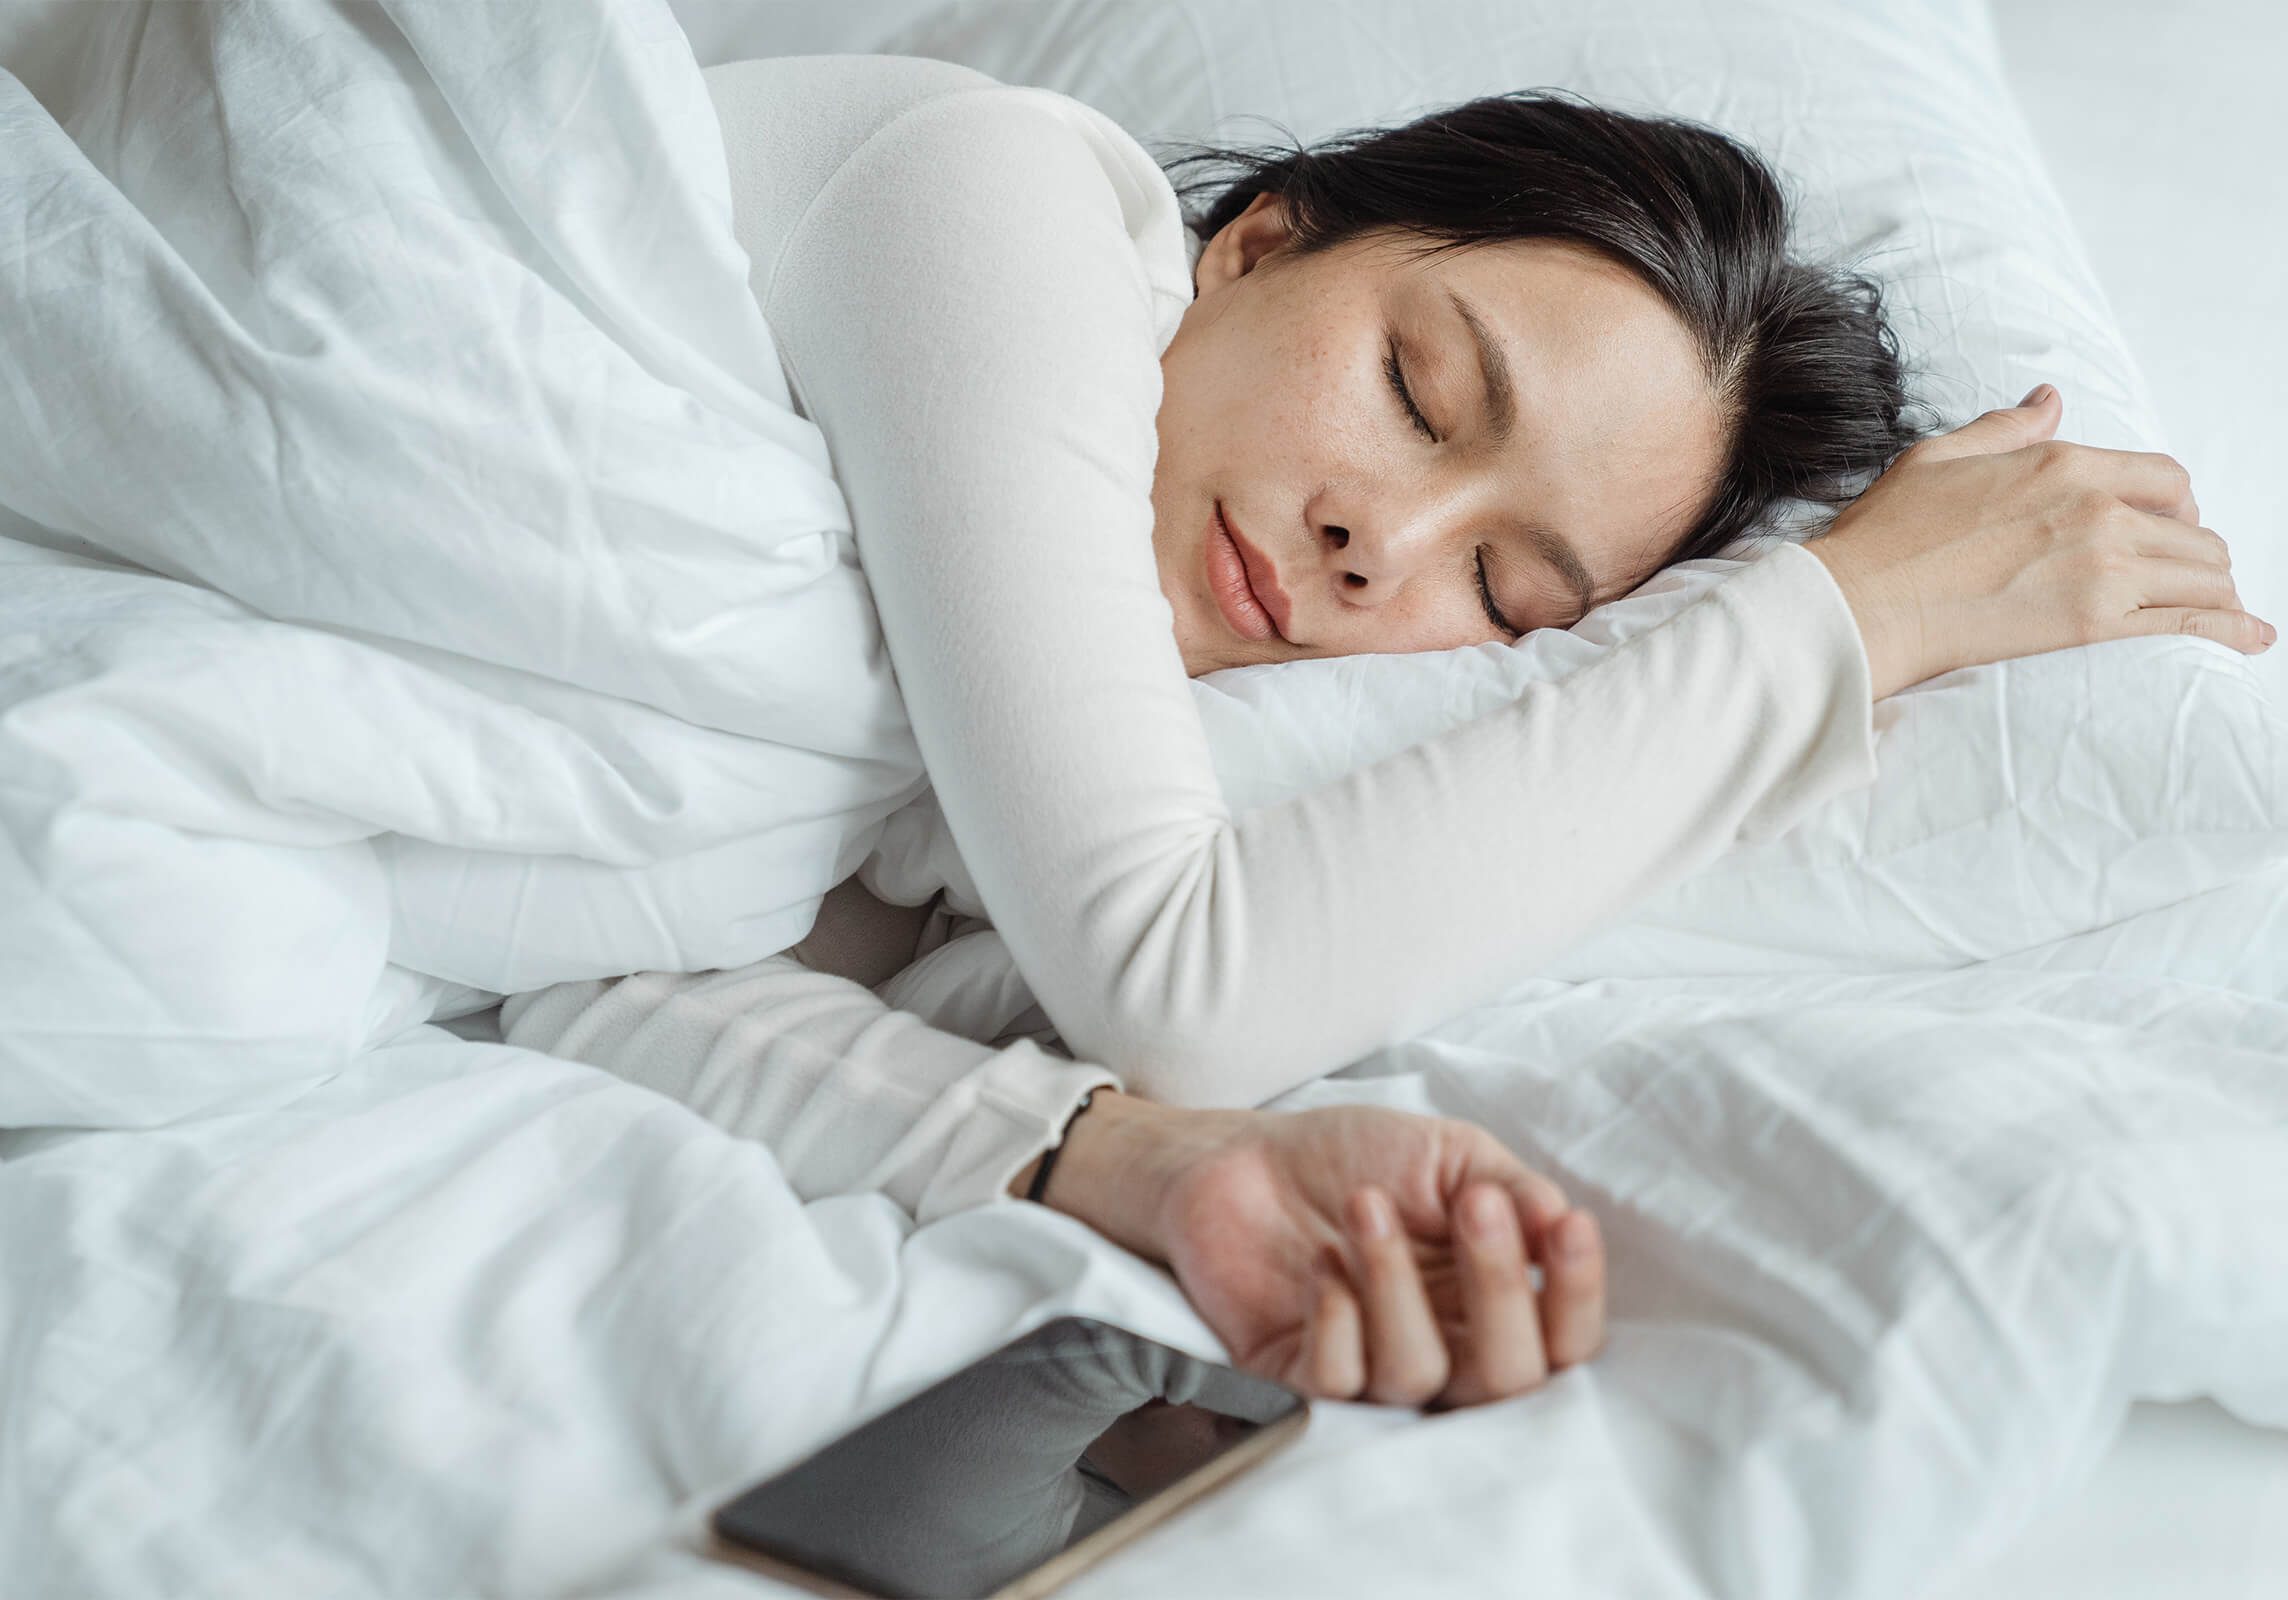 fit-for-sleep-schlafen-lernen-datenschutzerklaerung